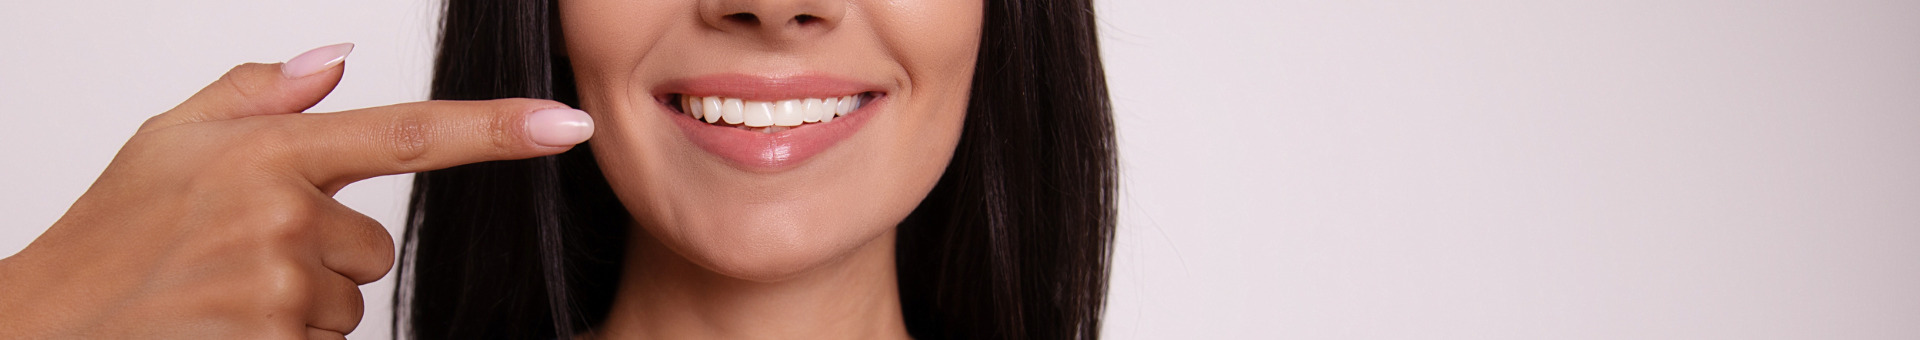 Plaque dentaire : Comprendre et vaincre l'ennemi de votre sourire. 4